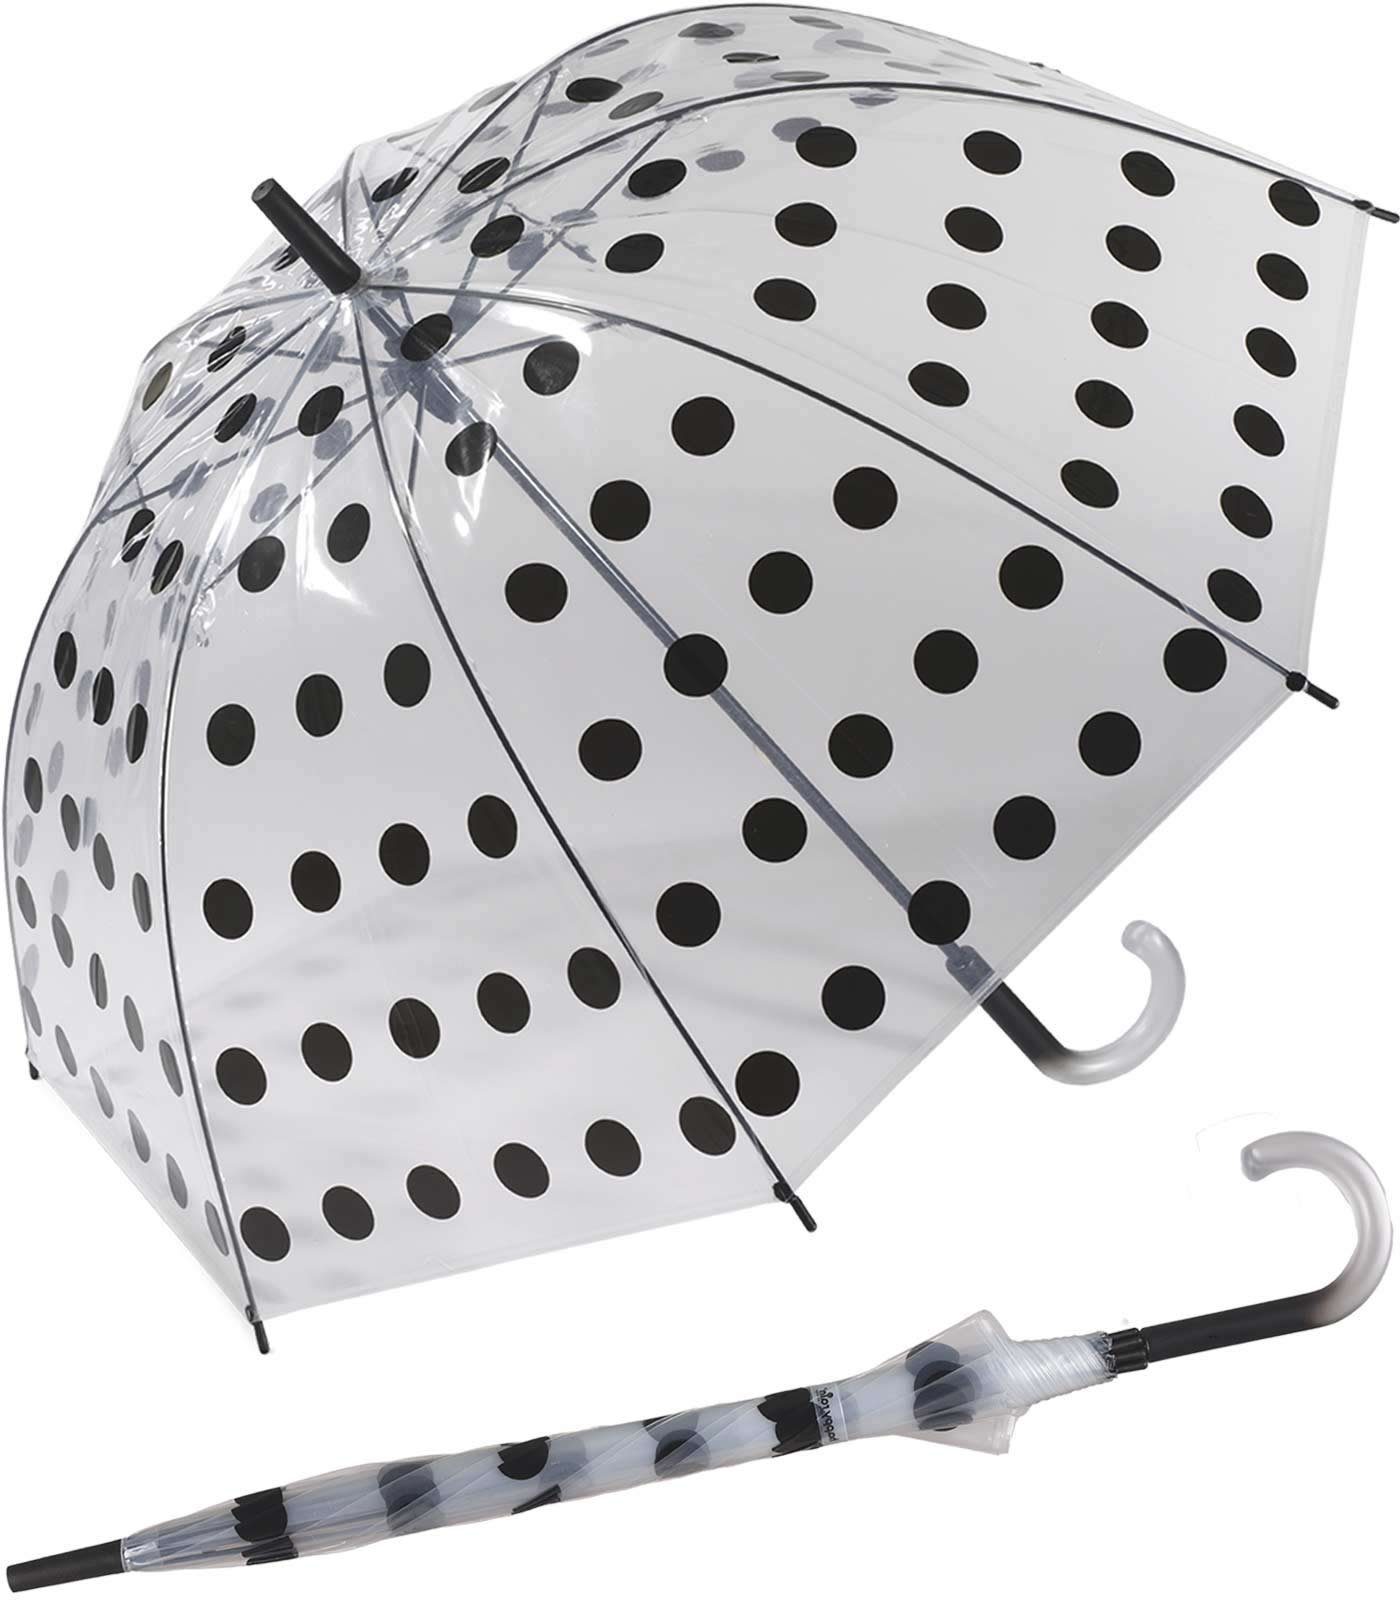 HAPPY bunte tansparent-schwarz großer Big Farbe nasse Dots, in Punkte RAIN transparenter Langregenschirm bringen Grau das Glockenschirm